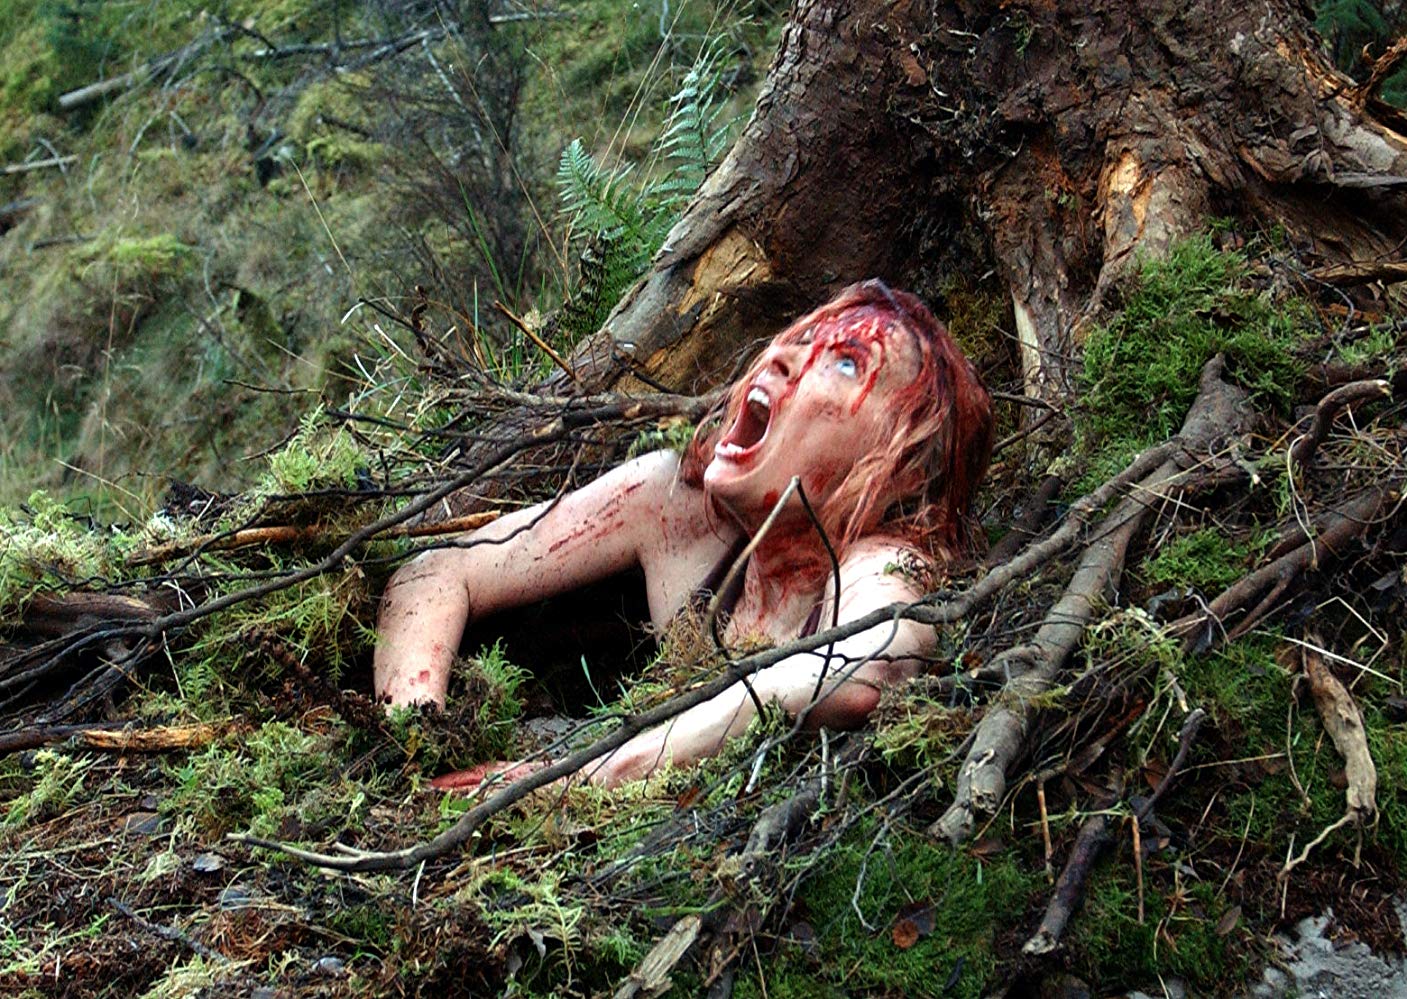 Shauna Macdonald in The Descent (2005)